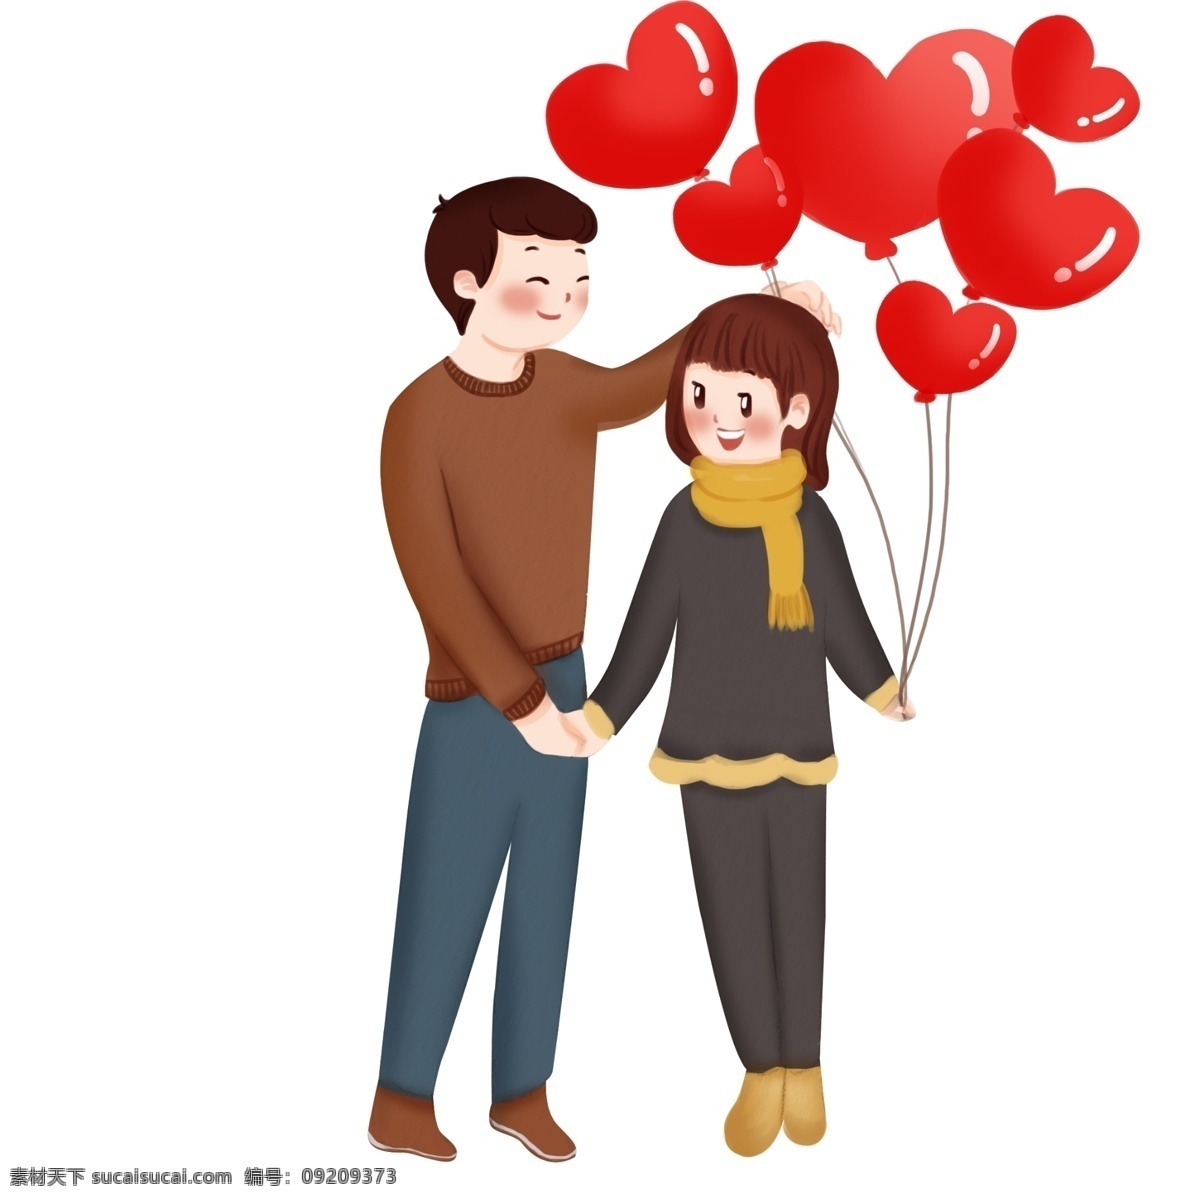 情人节 人物 气球 插画 红色的气球 桃心气球 漂亮的小女孩 黄色的围巾 恩爱的情侣